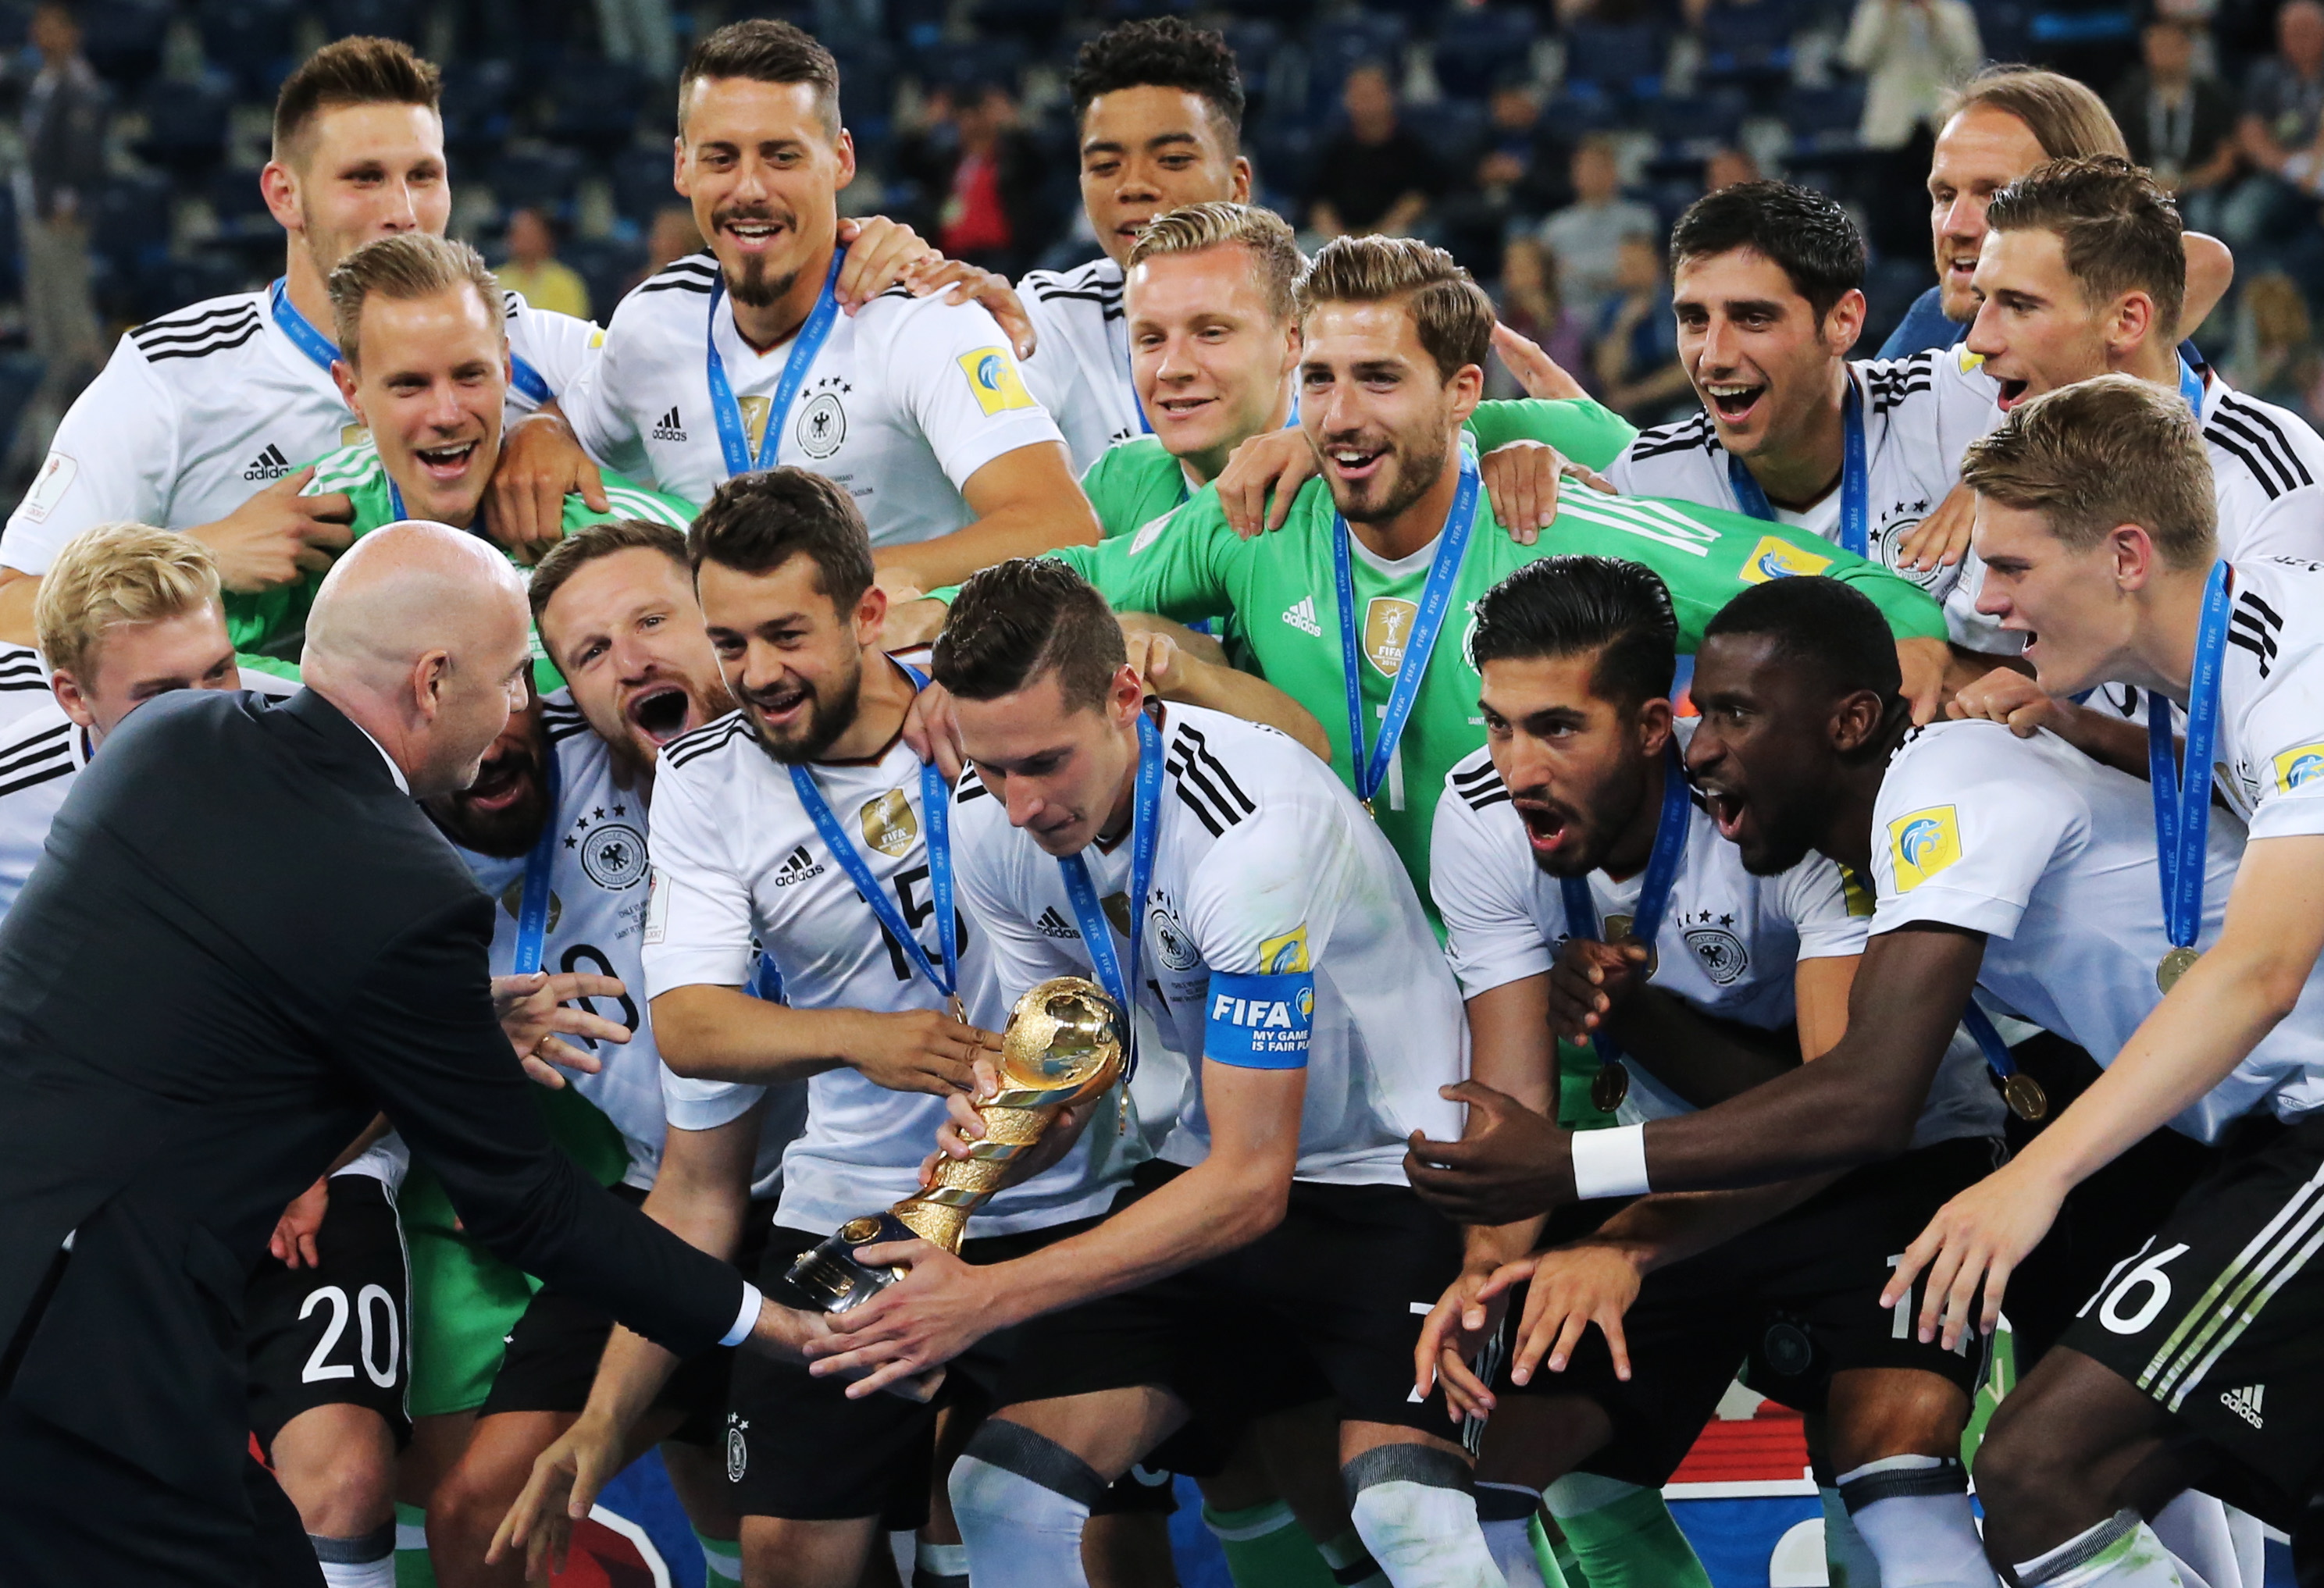 Капитан сборной Германии Юлиан Дракслер получает кубок из рук президента ФИФА Джанни Инфантино